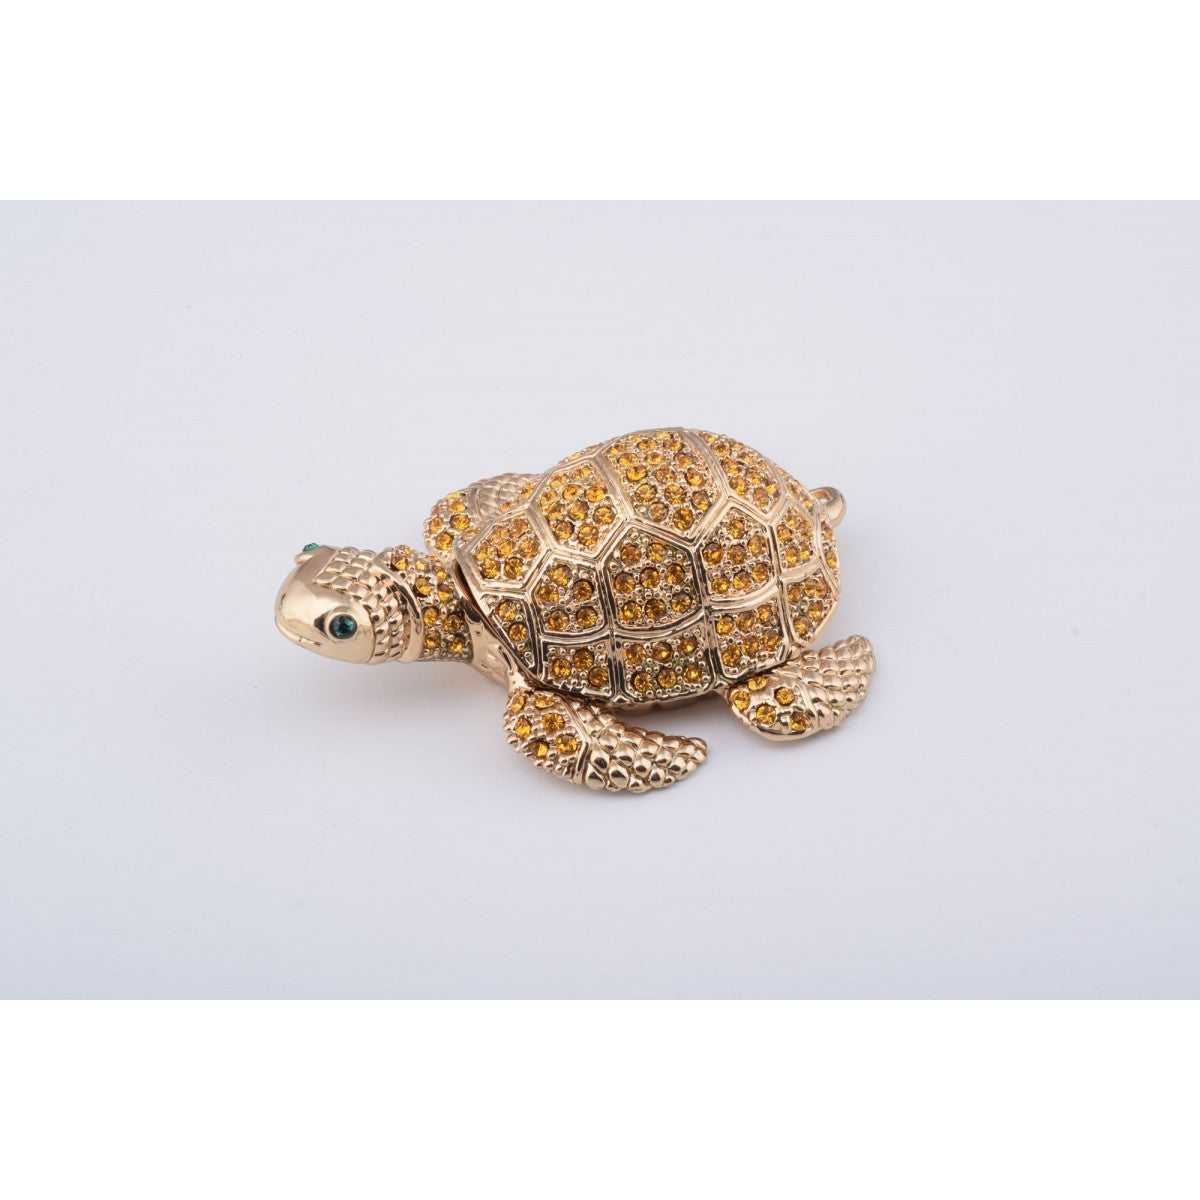 Golden Turtle Trinket Box by Keren Kopal